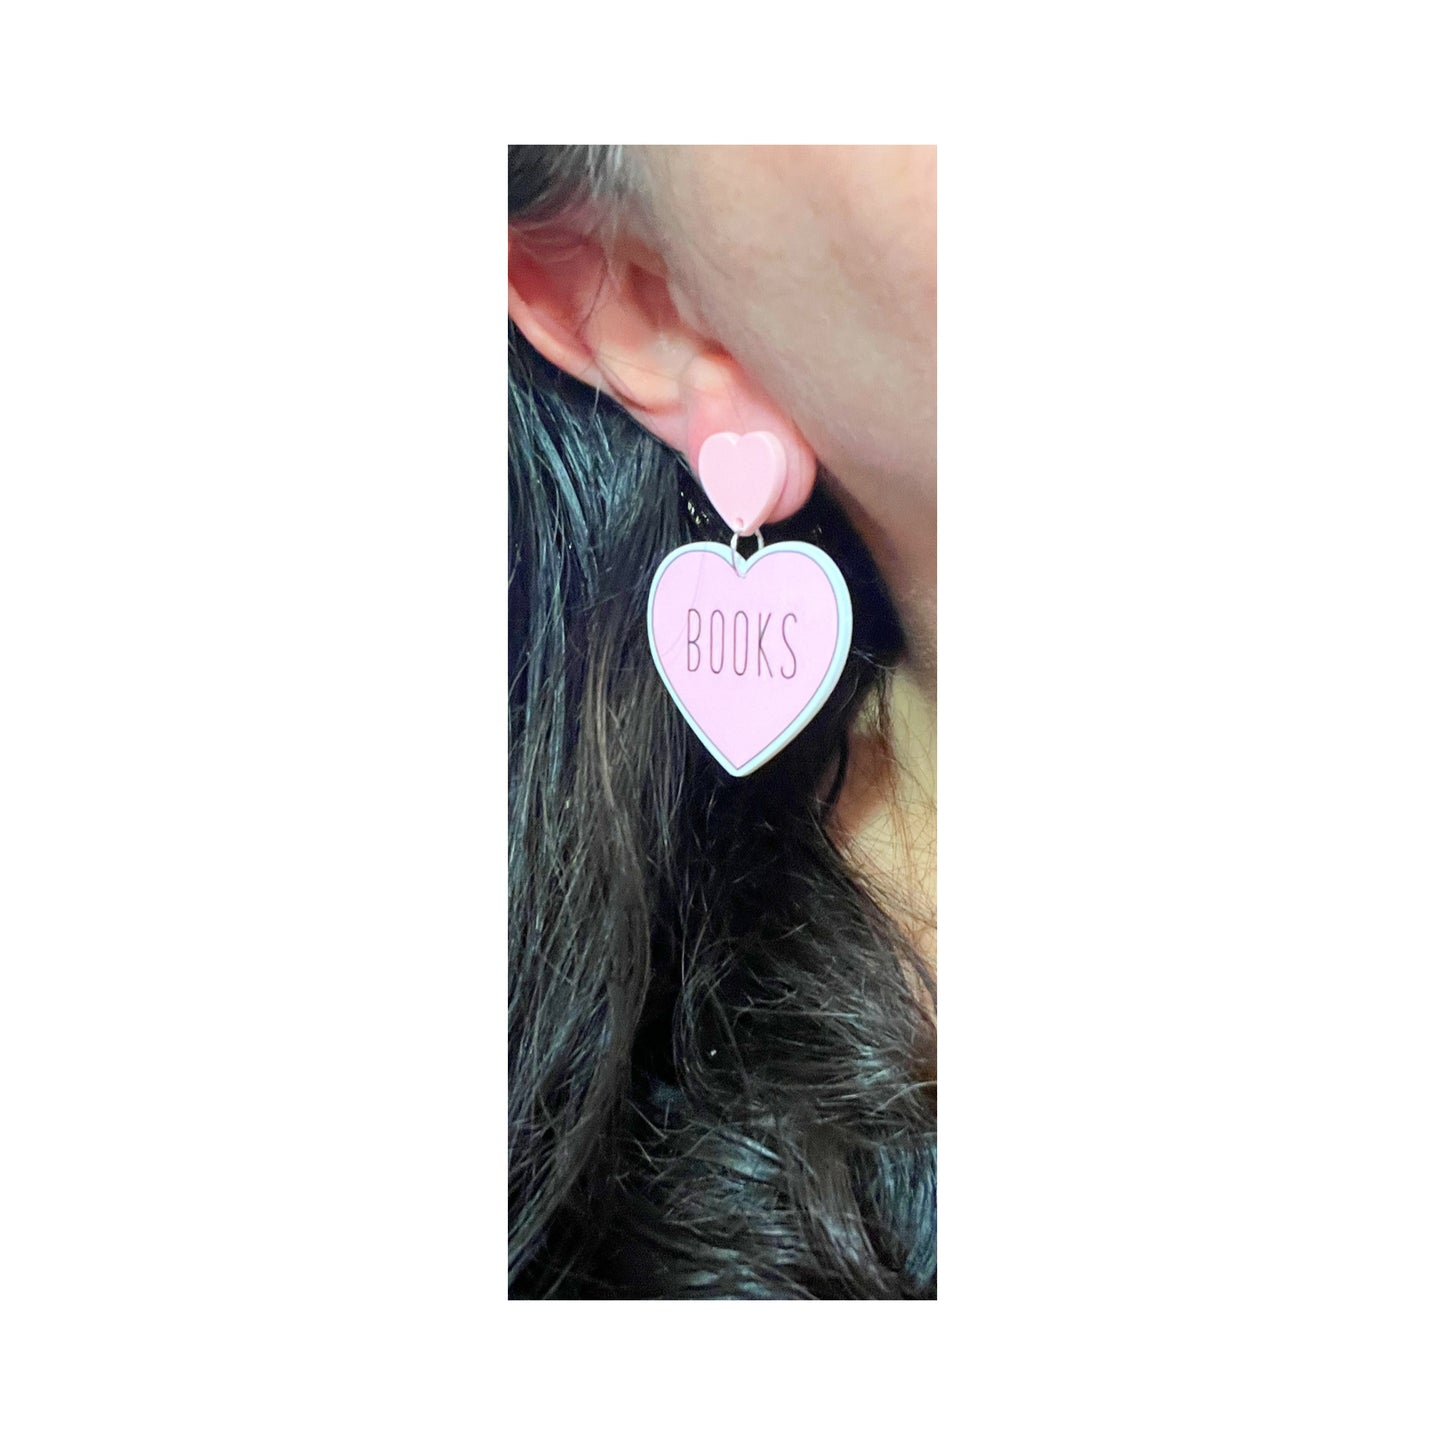 Pink “Books” Heart Acrylic Drop Earrings